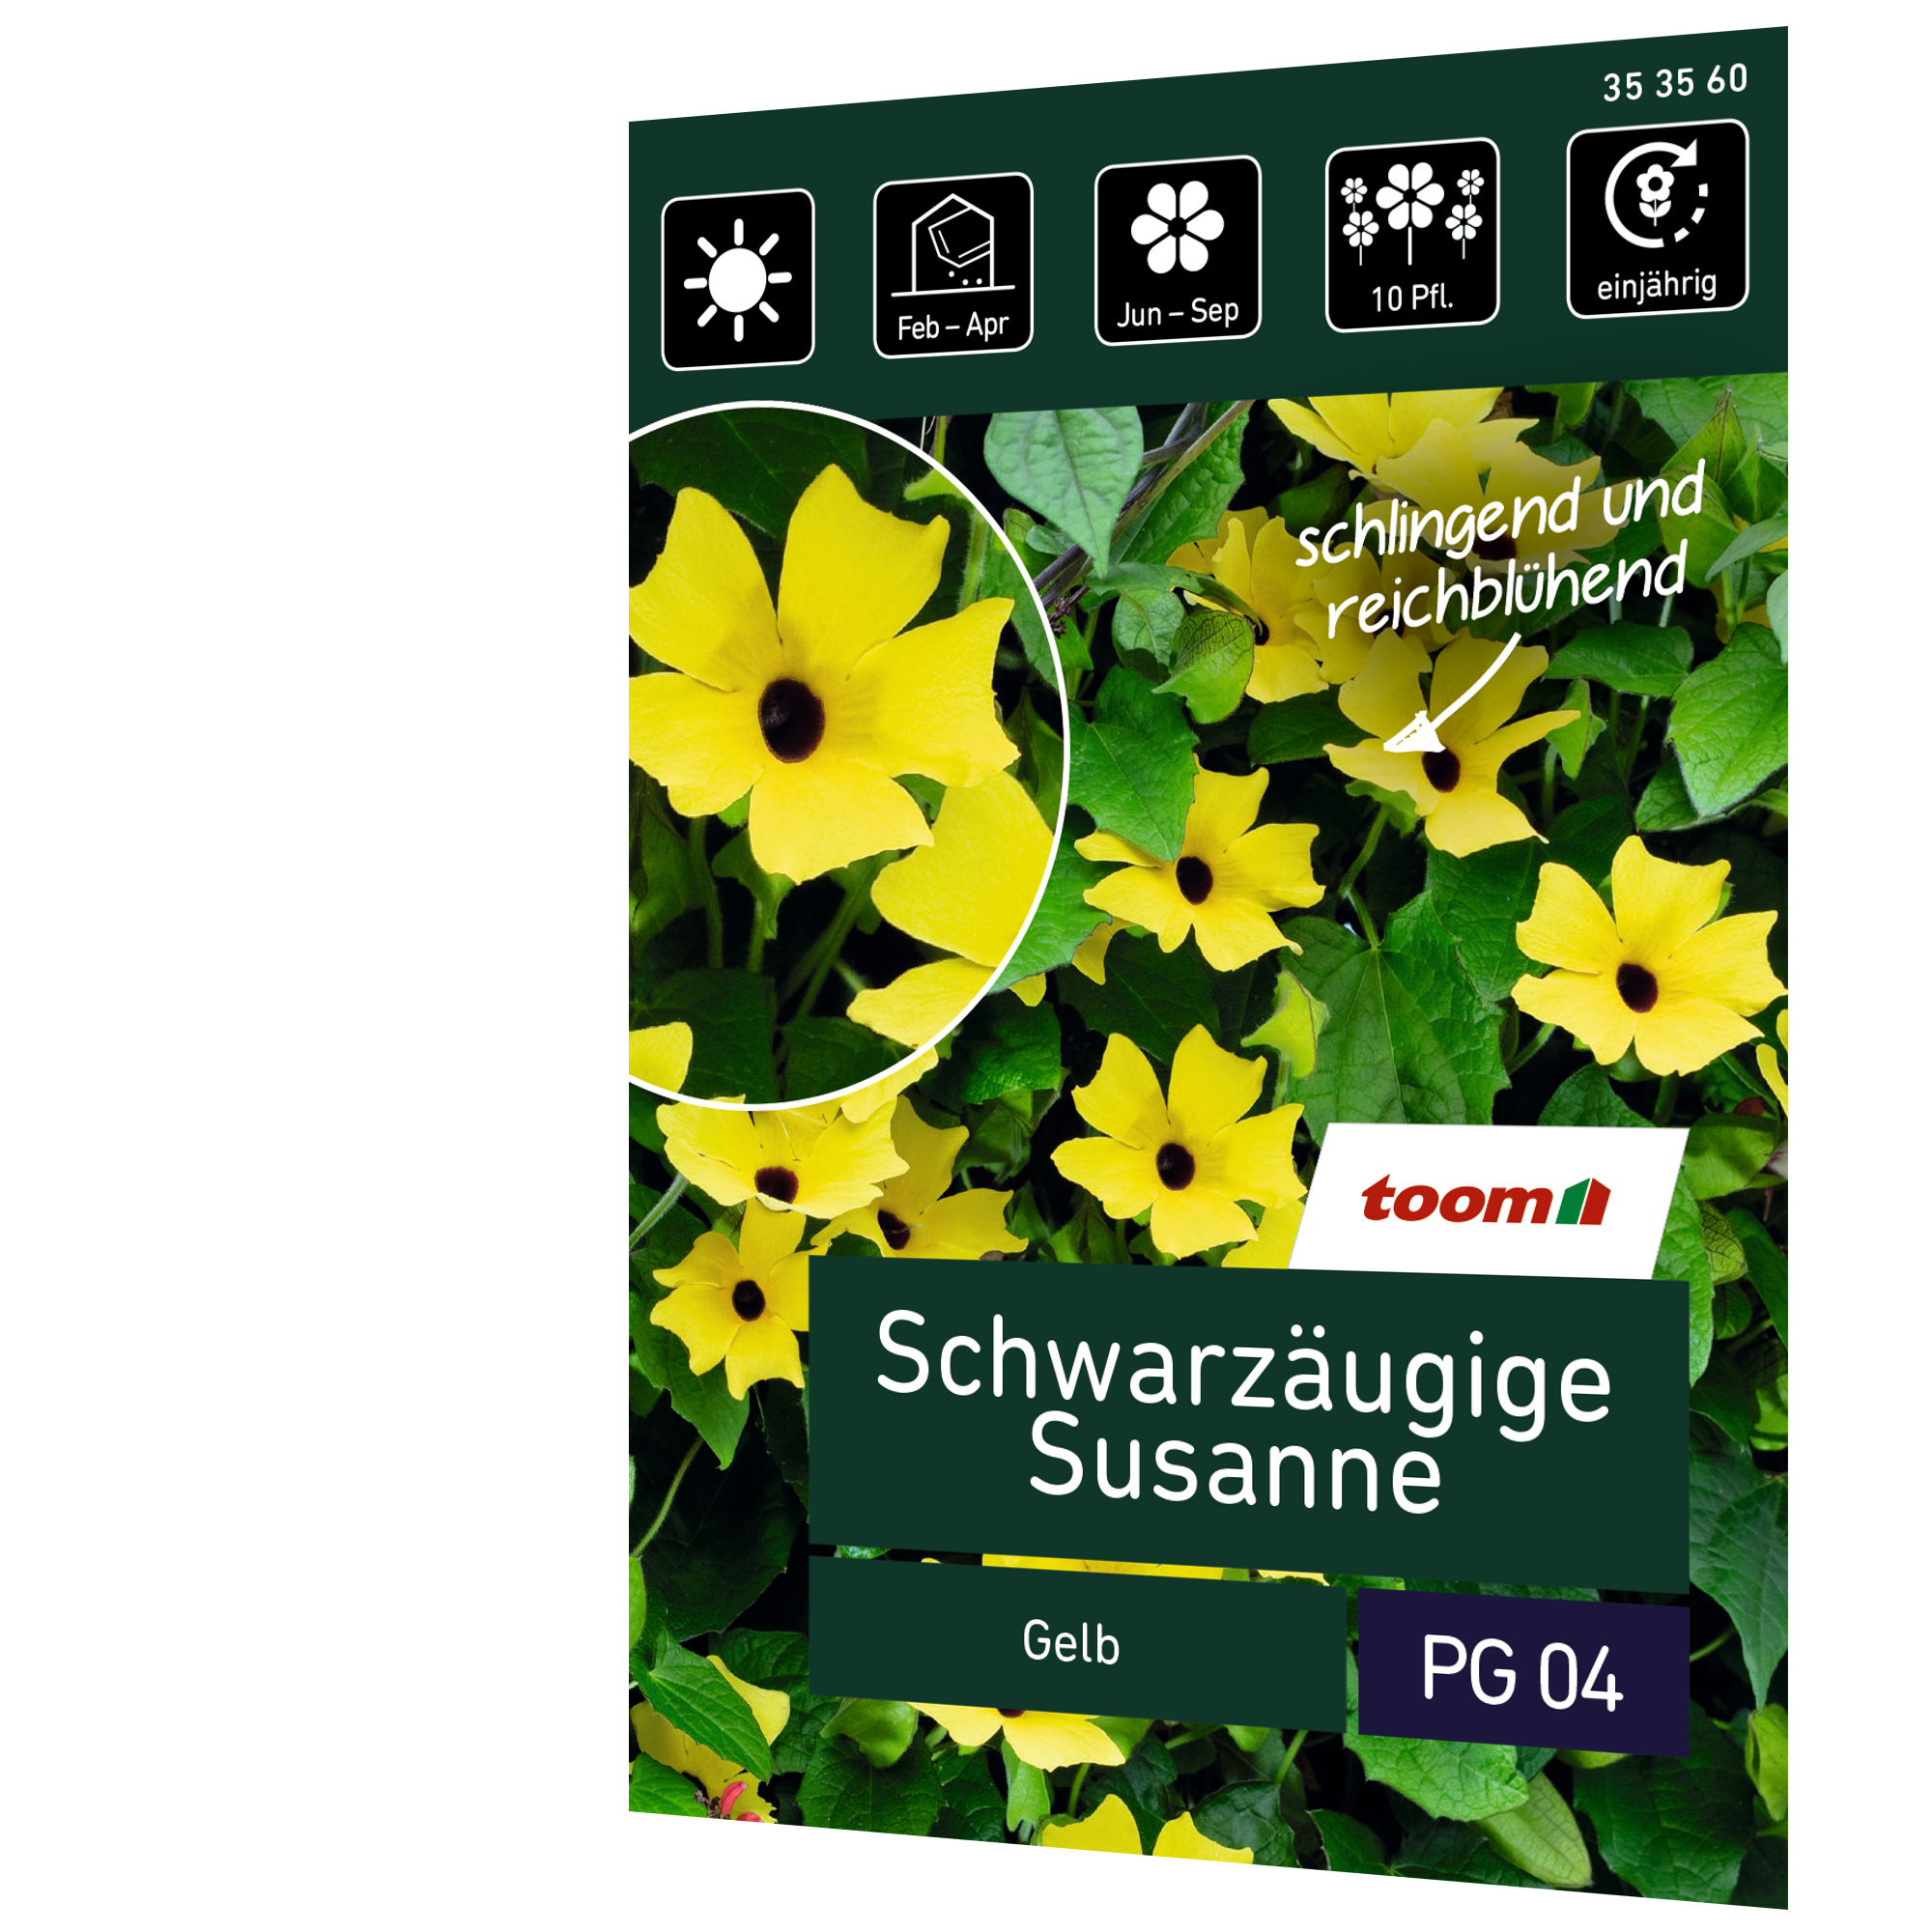 Schwarzäugige Susanne 'Gelb' + product picture